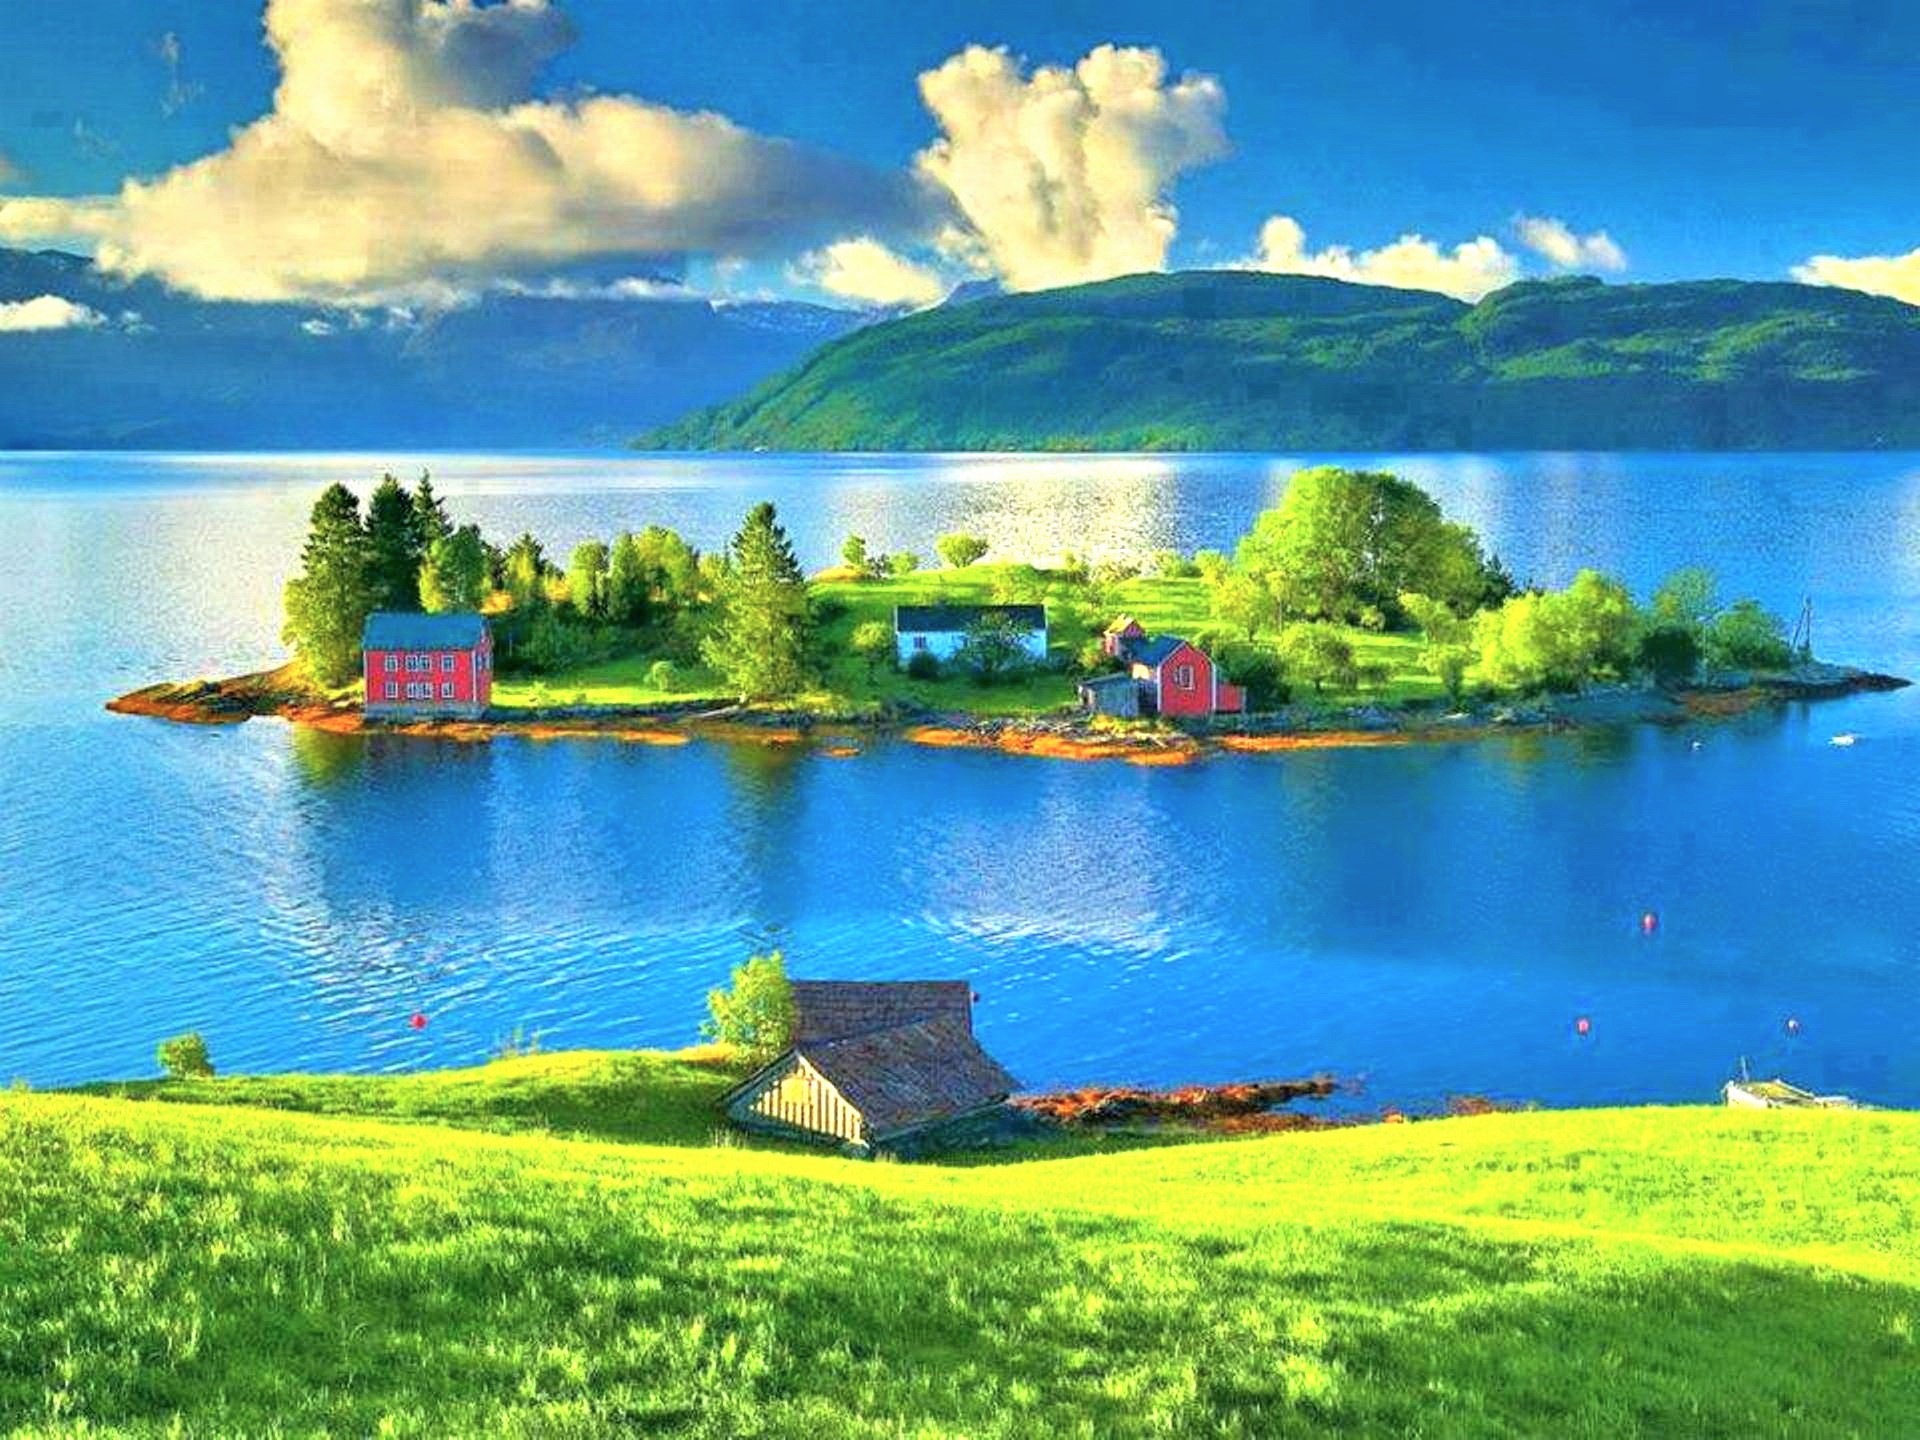 Download mobile wallpaper Mountain, Lake, Village, Norway, Man Made for free.